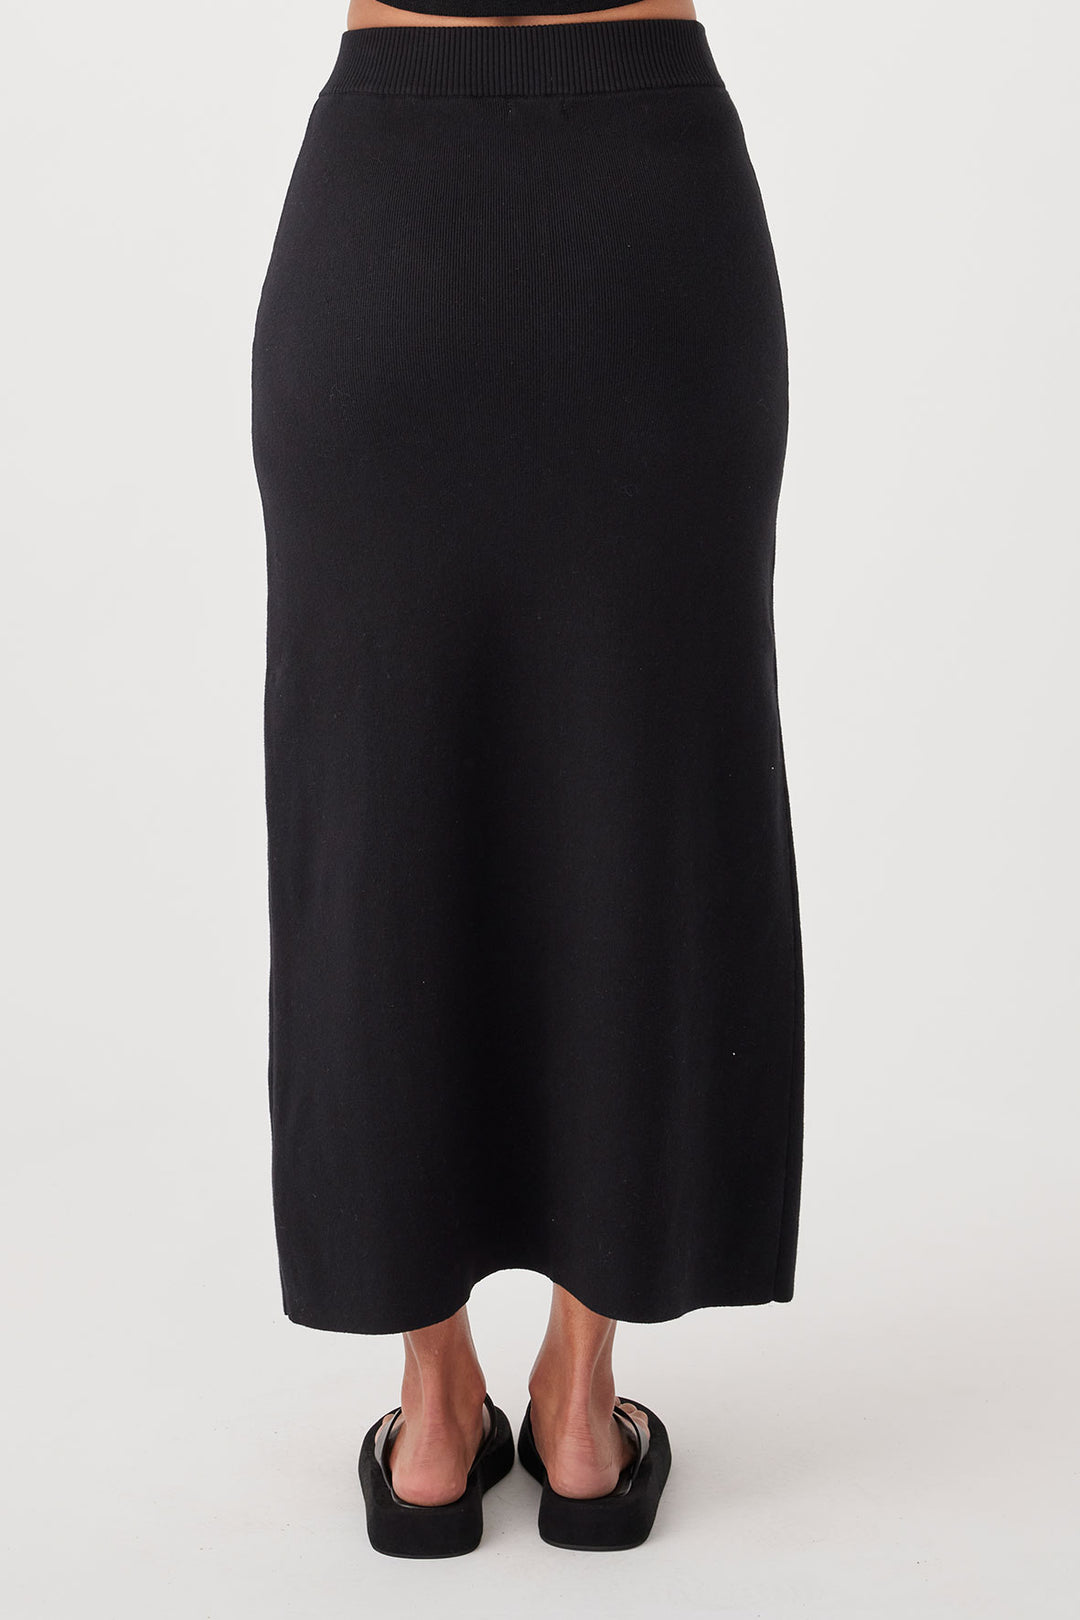 harla skirt, A Line shape, Front spilt, Smooth knit